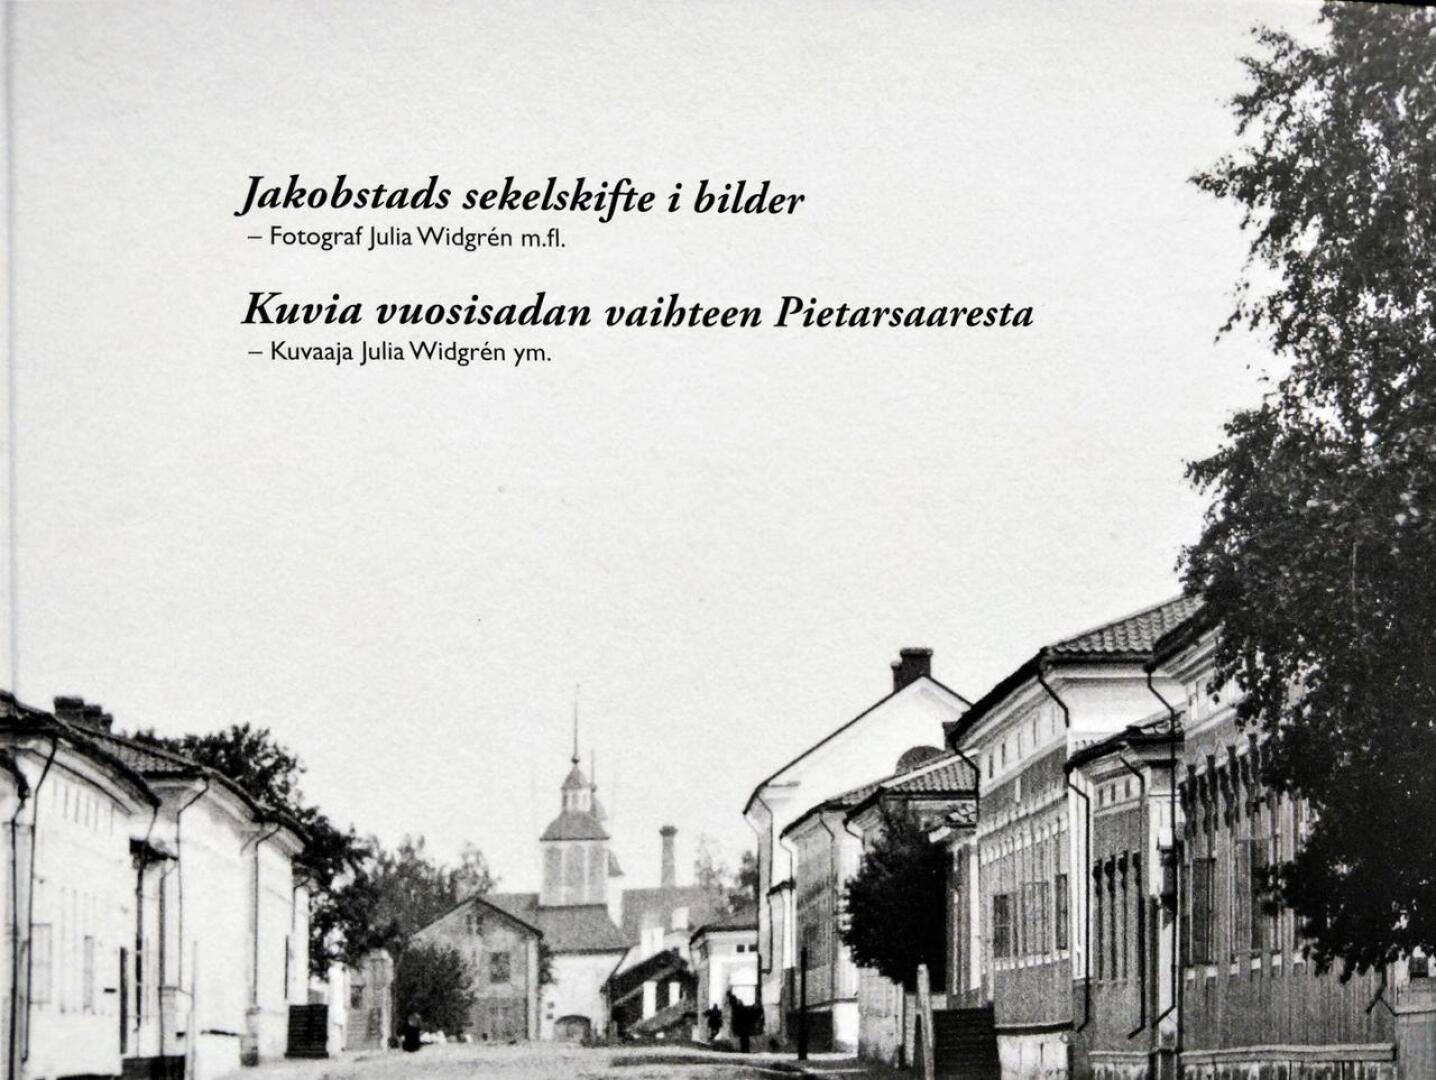 Pietarsaaren museon julkaisusarjan 31. teos on valokuvakirja, jonka perustana ovat Julia Widgrénin (1842-1917) ottamat kuvat. 